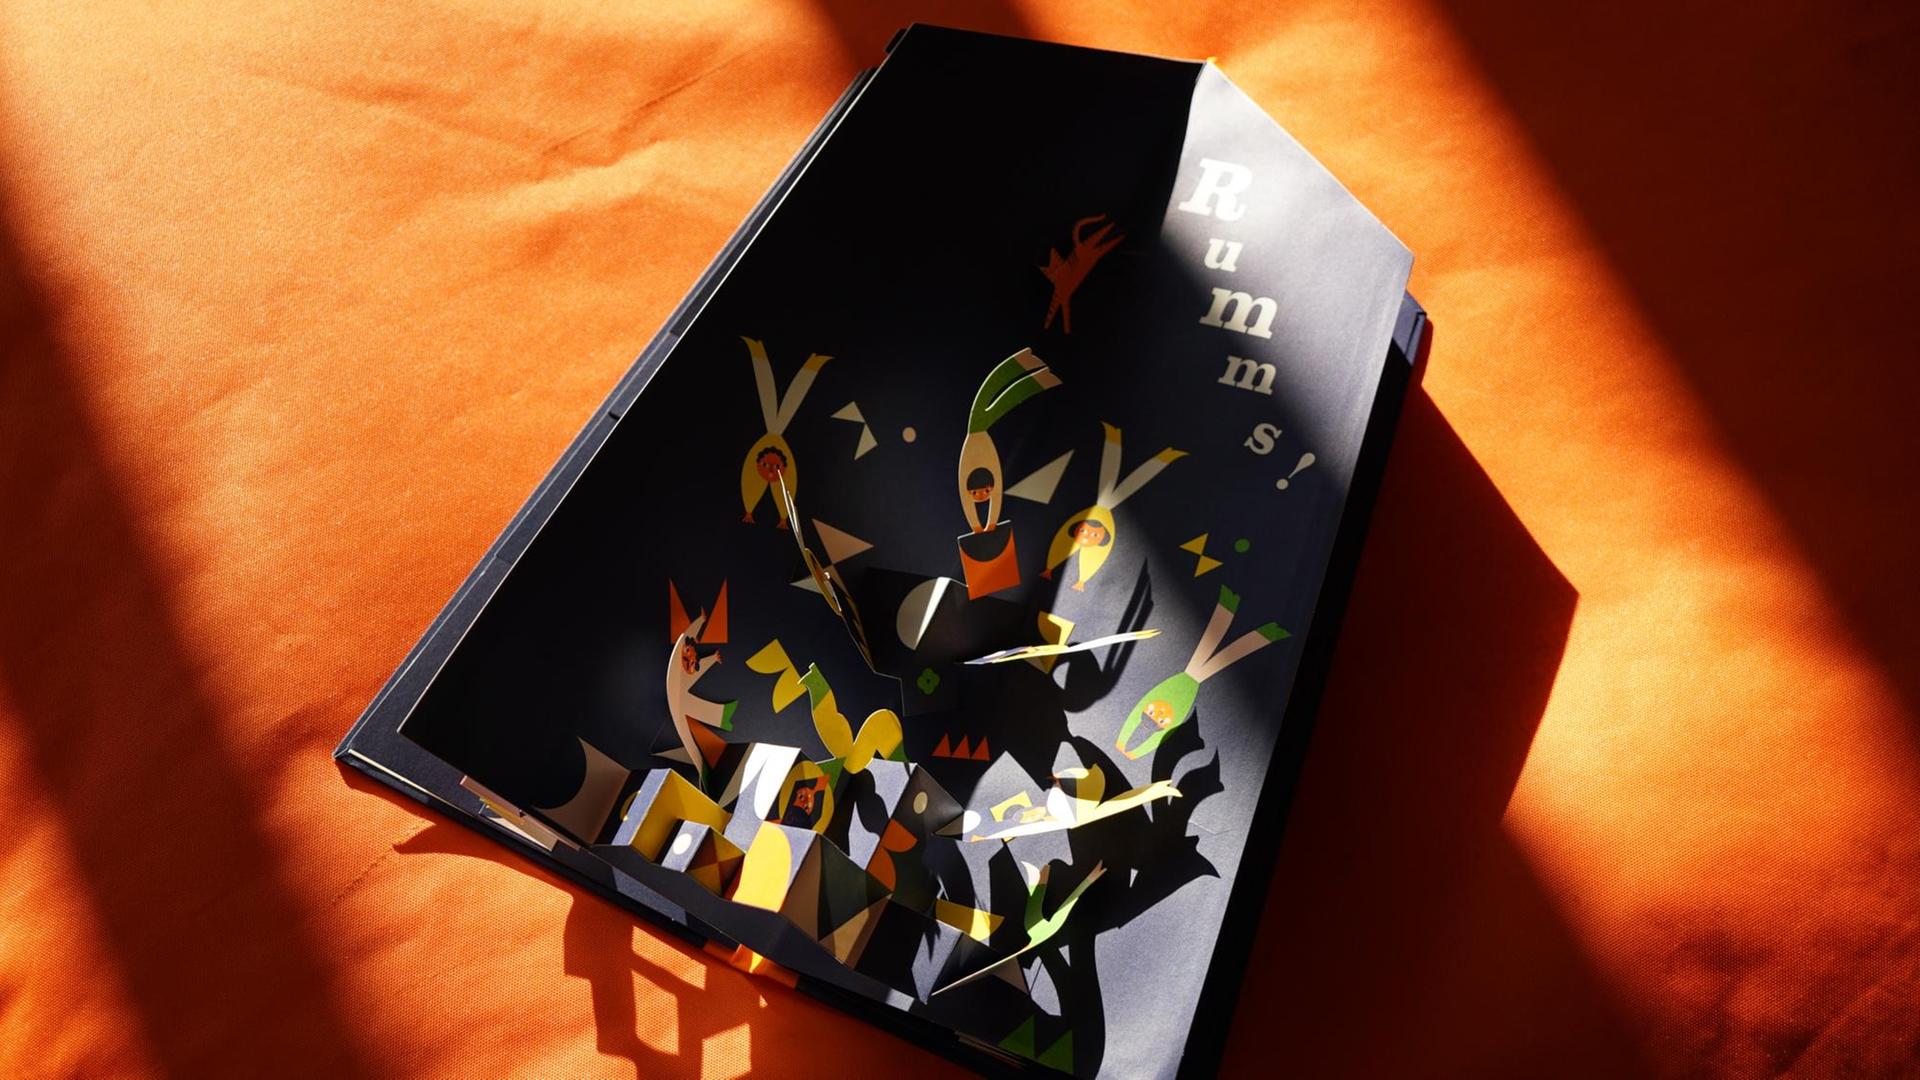 Das aufgeschlagene Kinderbuch "Eins, zwei, drei, die Akrobaten" auf orangenem Hintergrund.